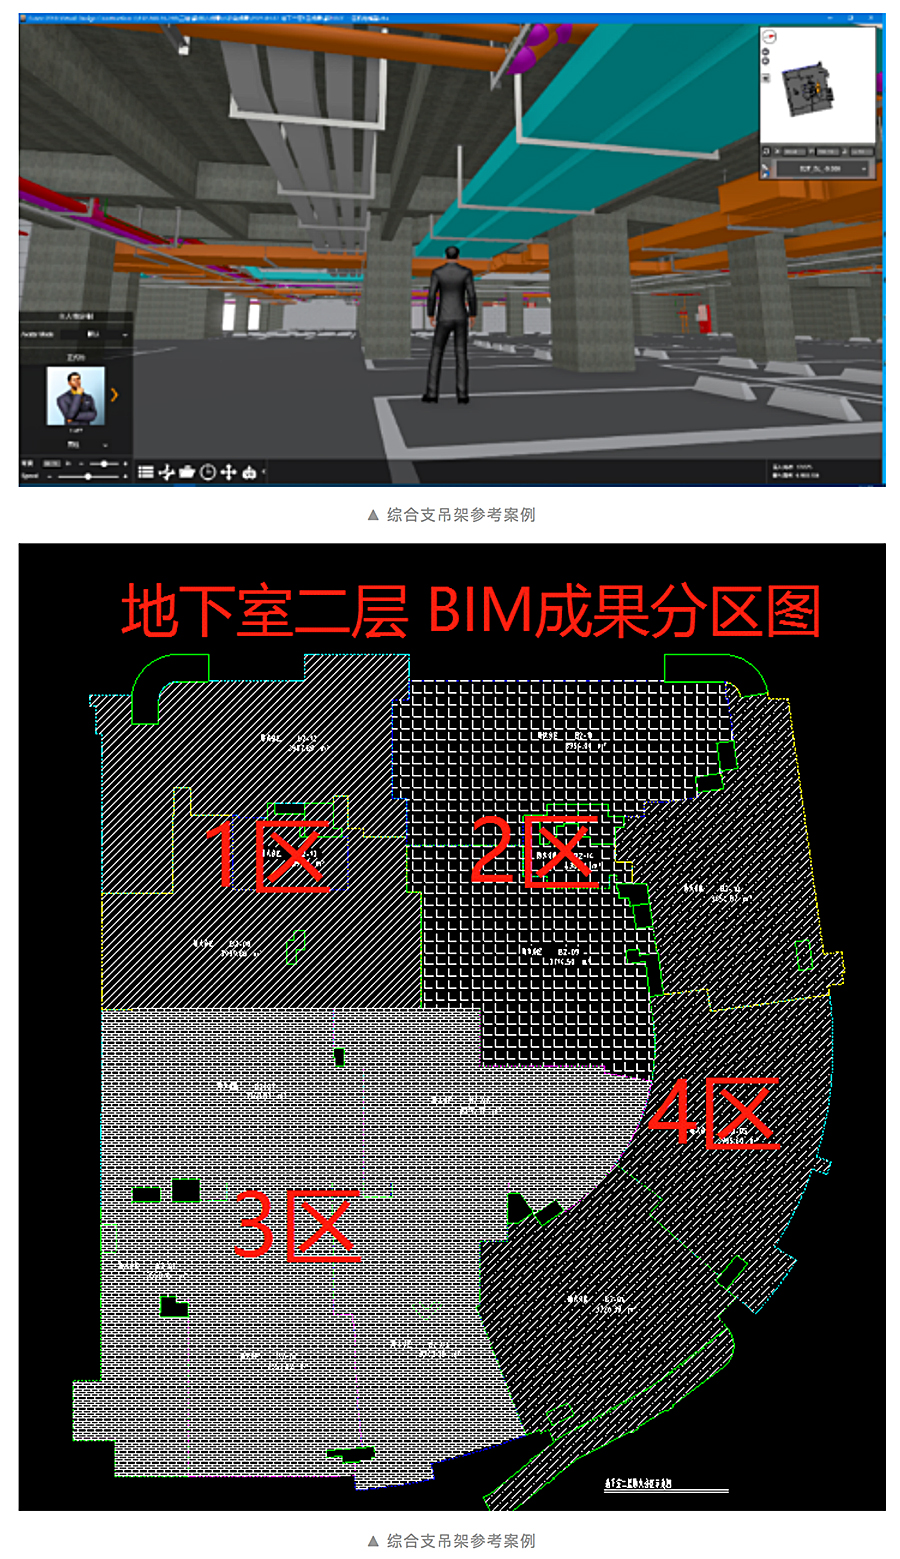 BIM技术在大型商业综合体设计与分析的应用研究-宁波鄞州宝龙一城_0008_图层-9.jpg